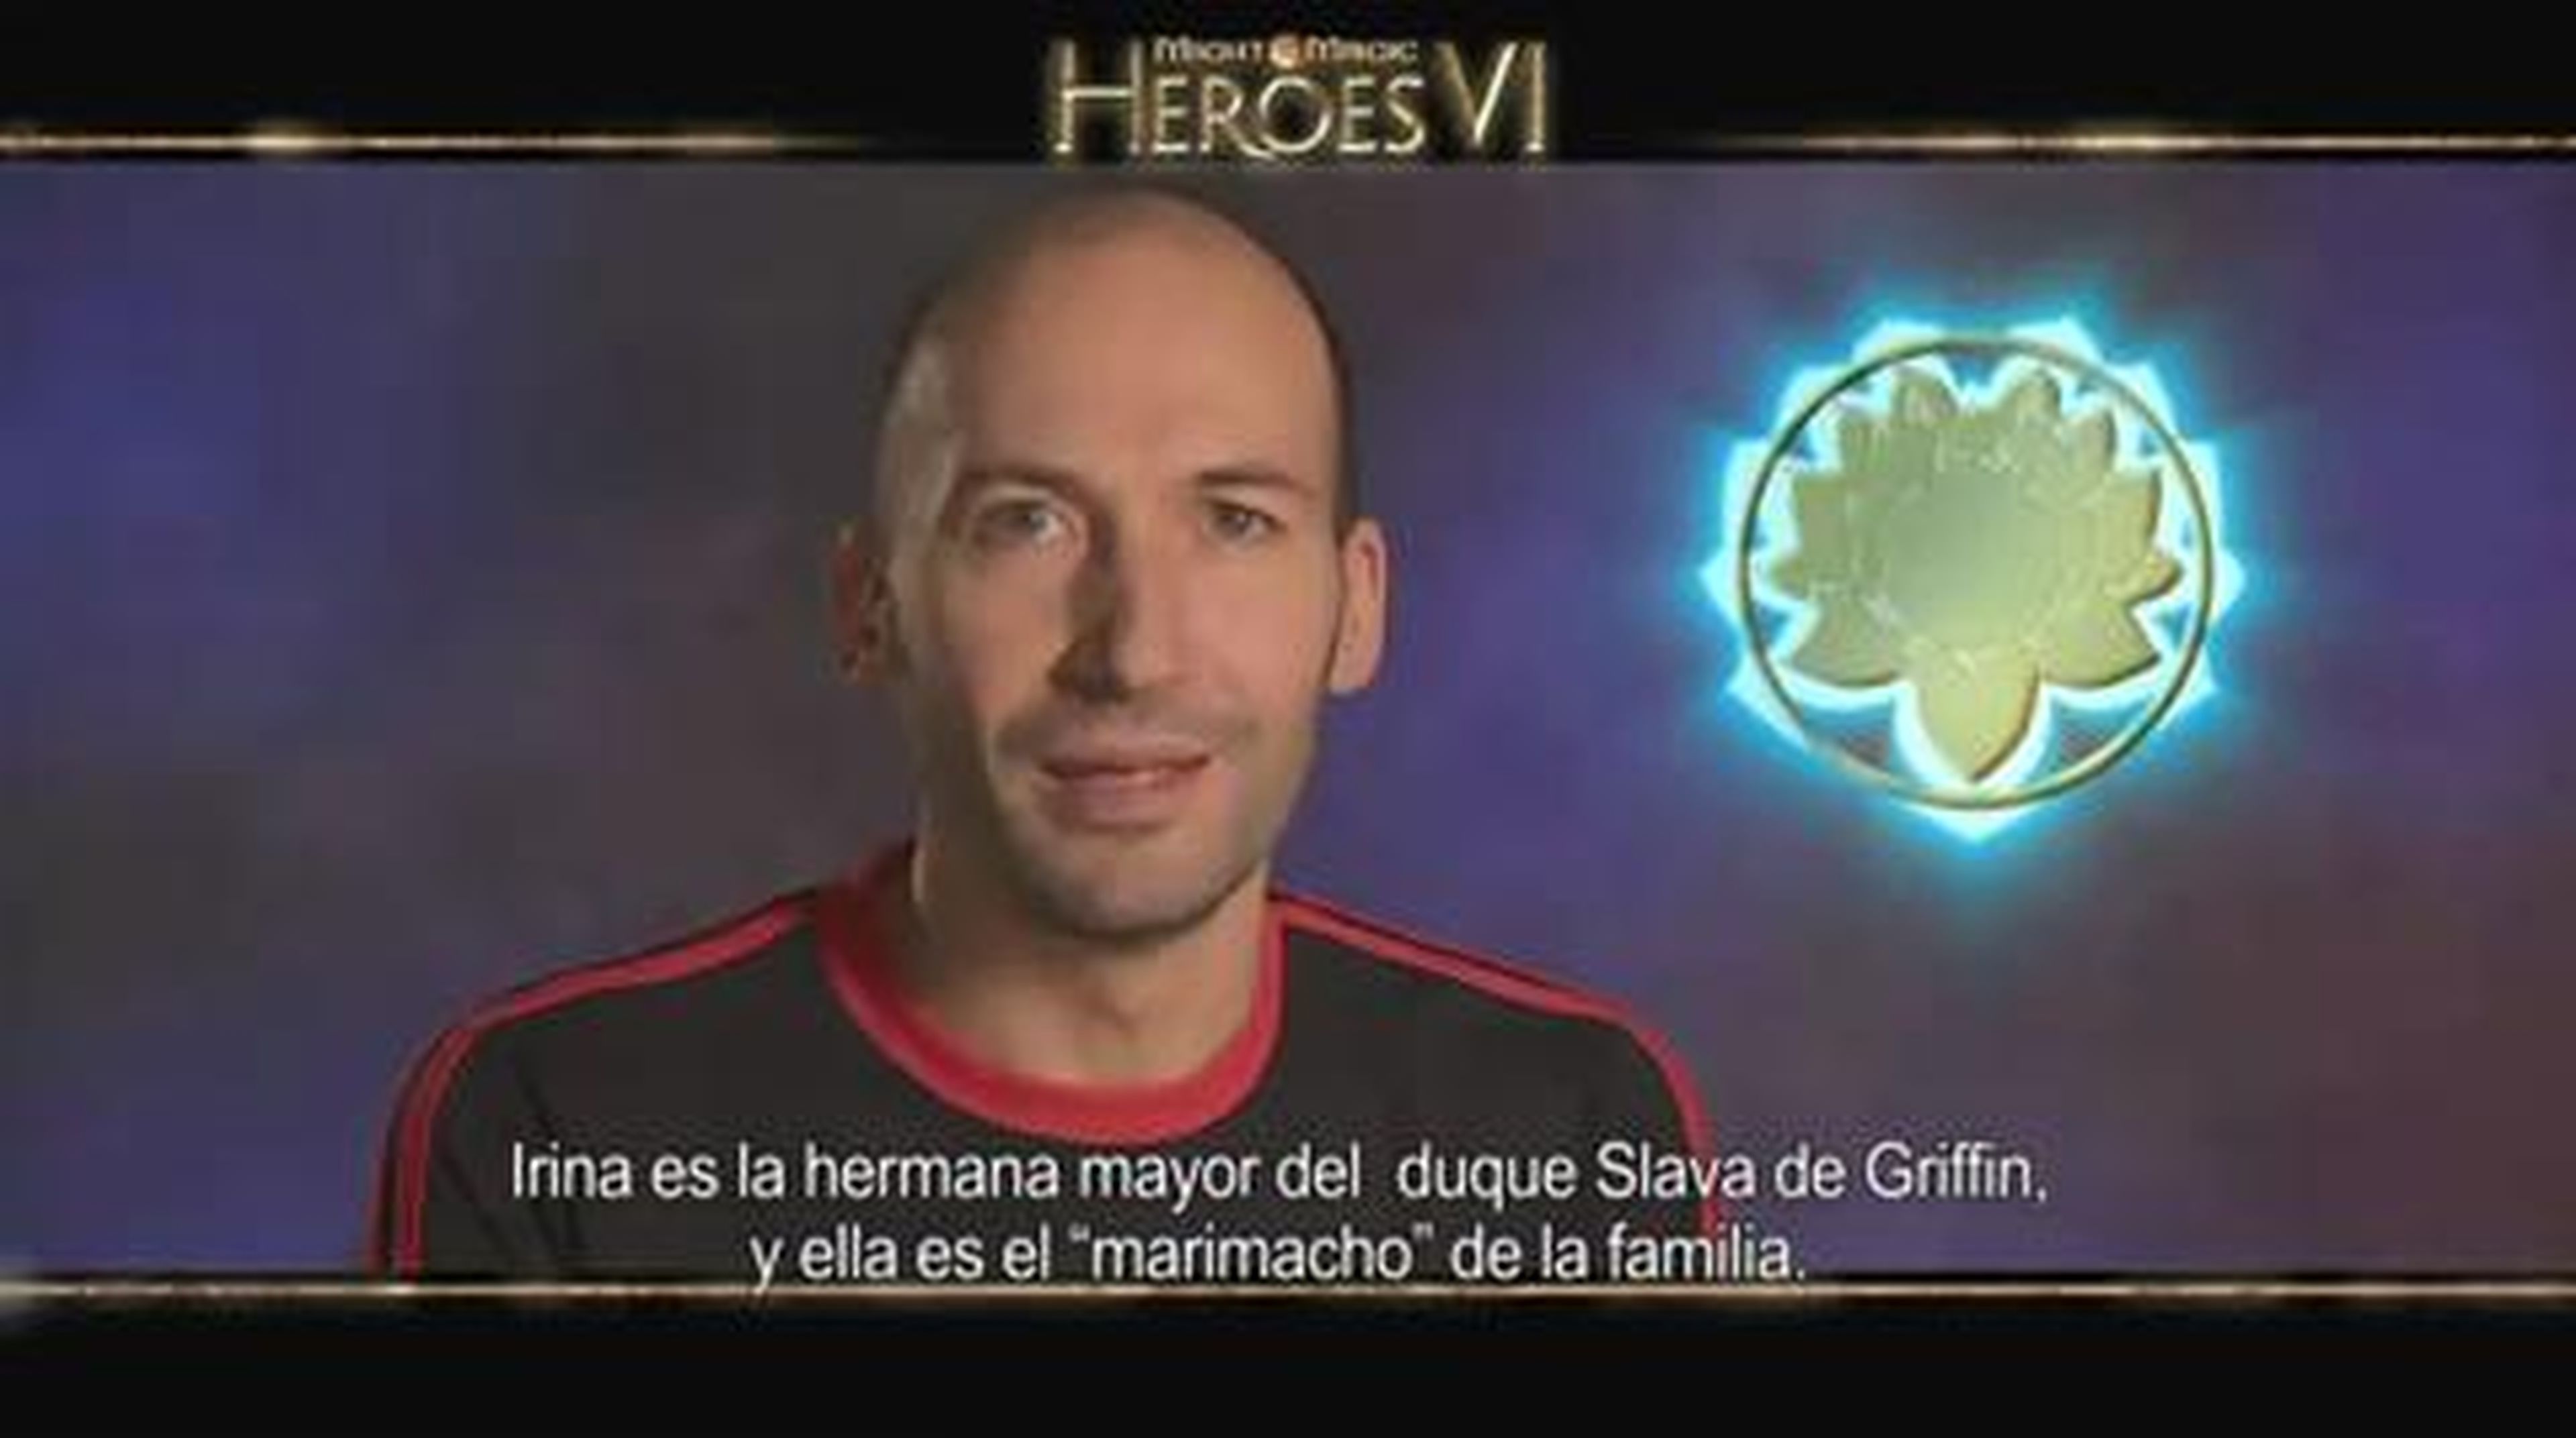 Facción Santuario de Might & Magic Heroes VI en HobbyNews.es